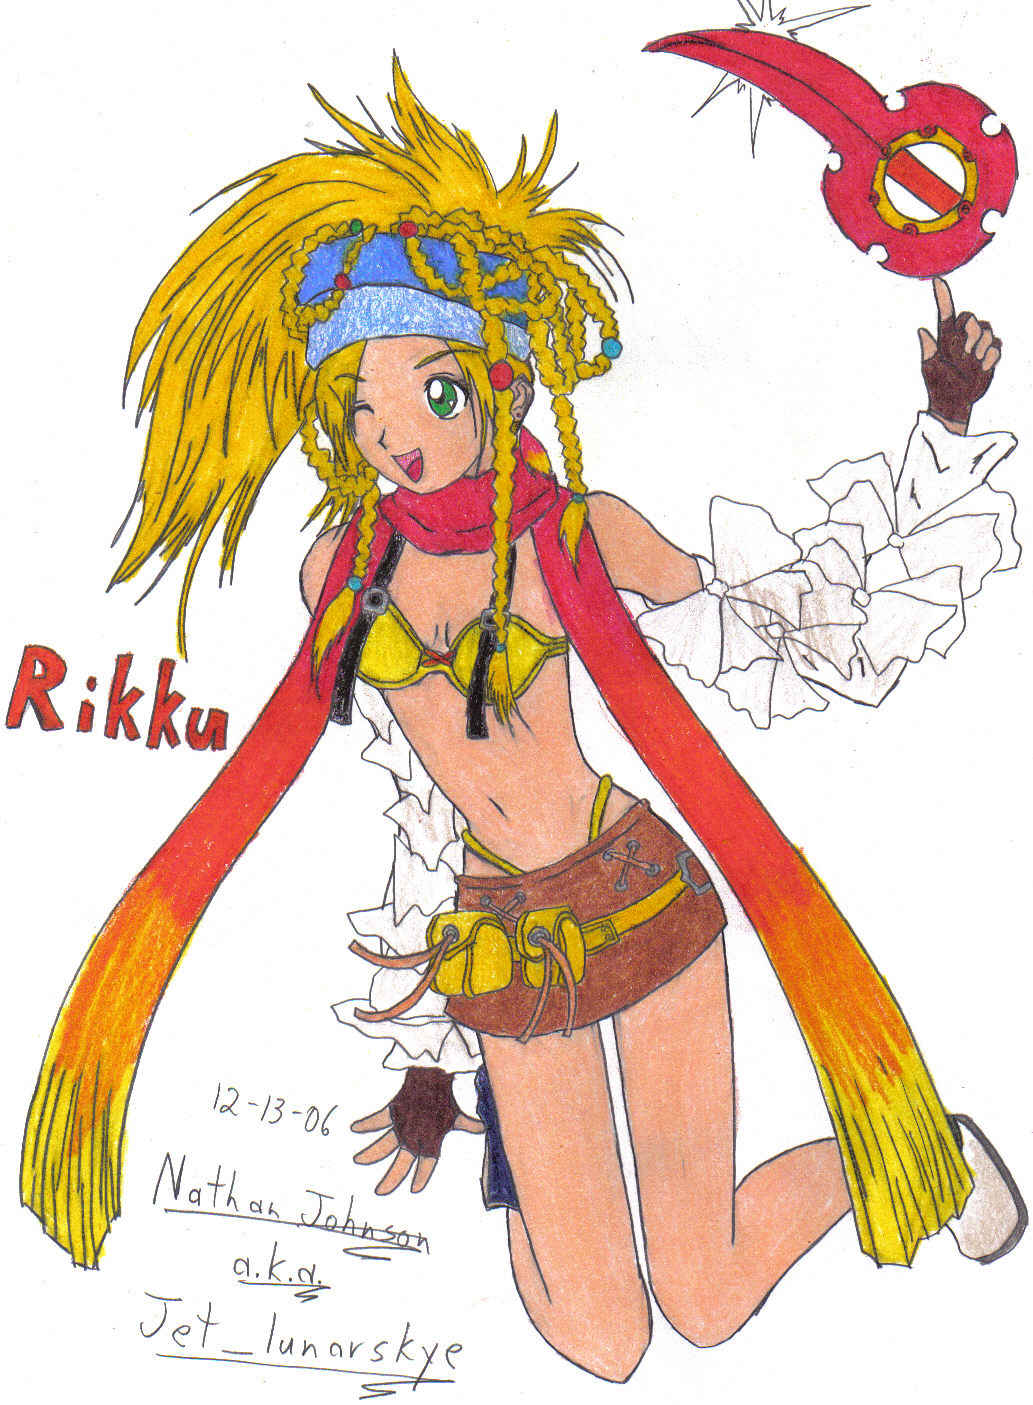 Rikku of the Gullwings!!! by Jet_lunarskye